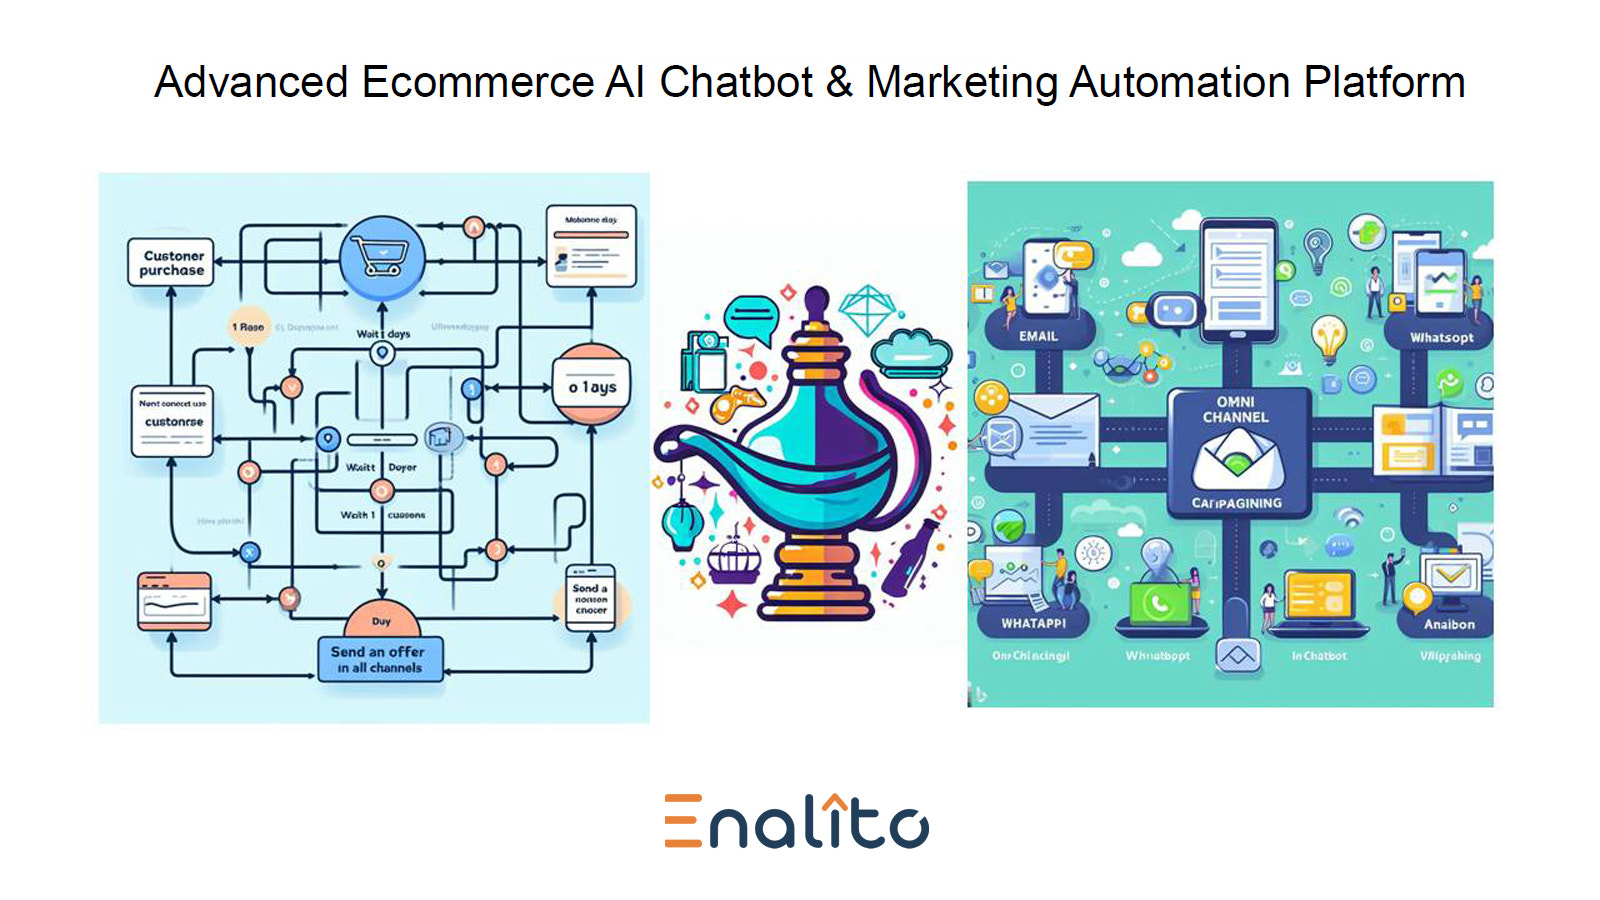 Plataforma Avanzada de Chatbot de IA y Automatización de Marketing para Ecommerce